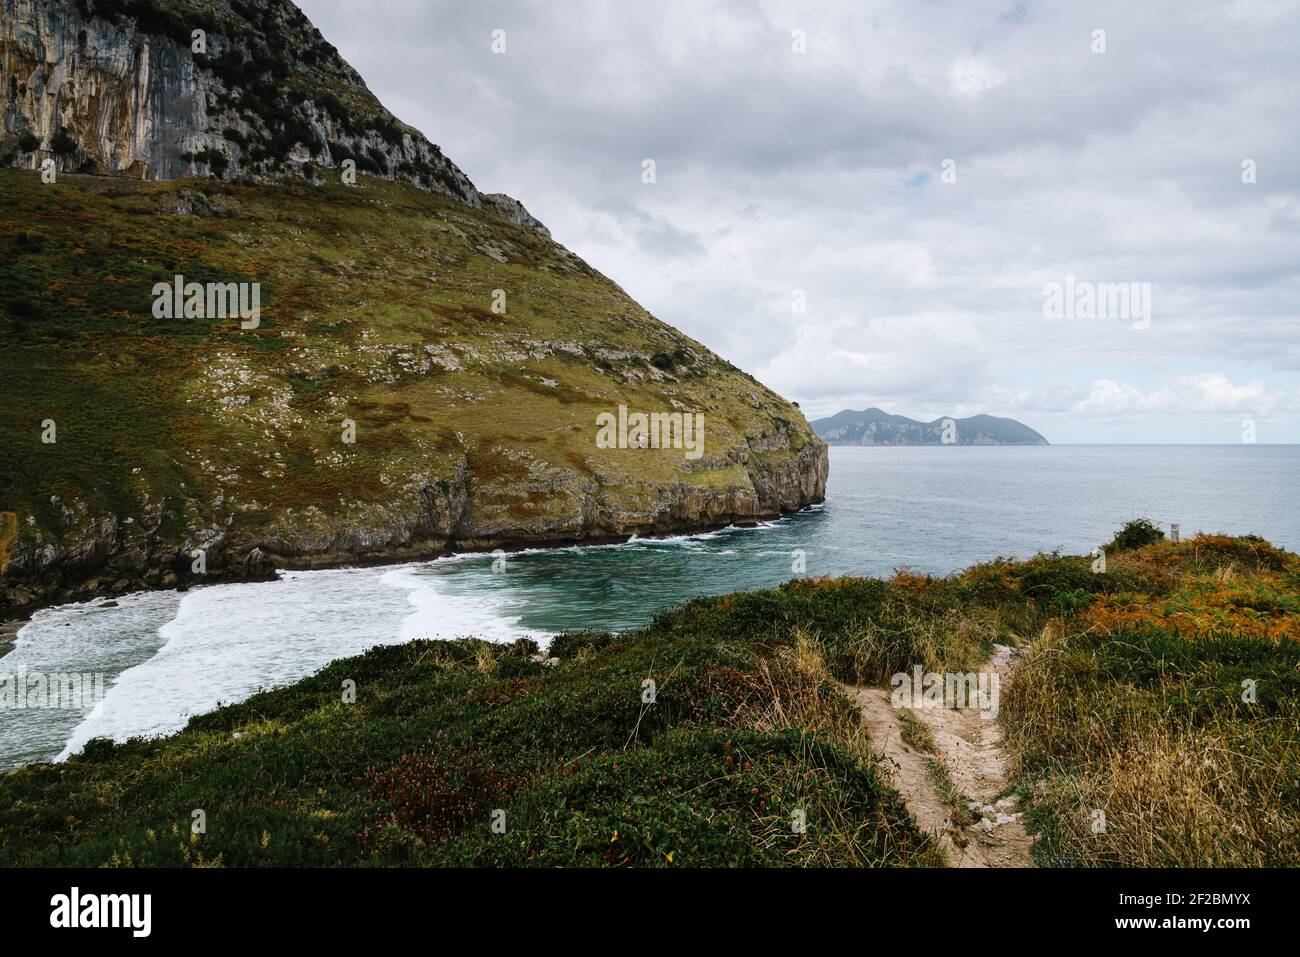 Vista panorámica del promontorio rocoso en la costa. Playa Sonabia en Cantabria, España Foto de stock